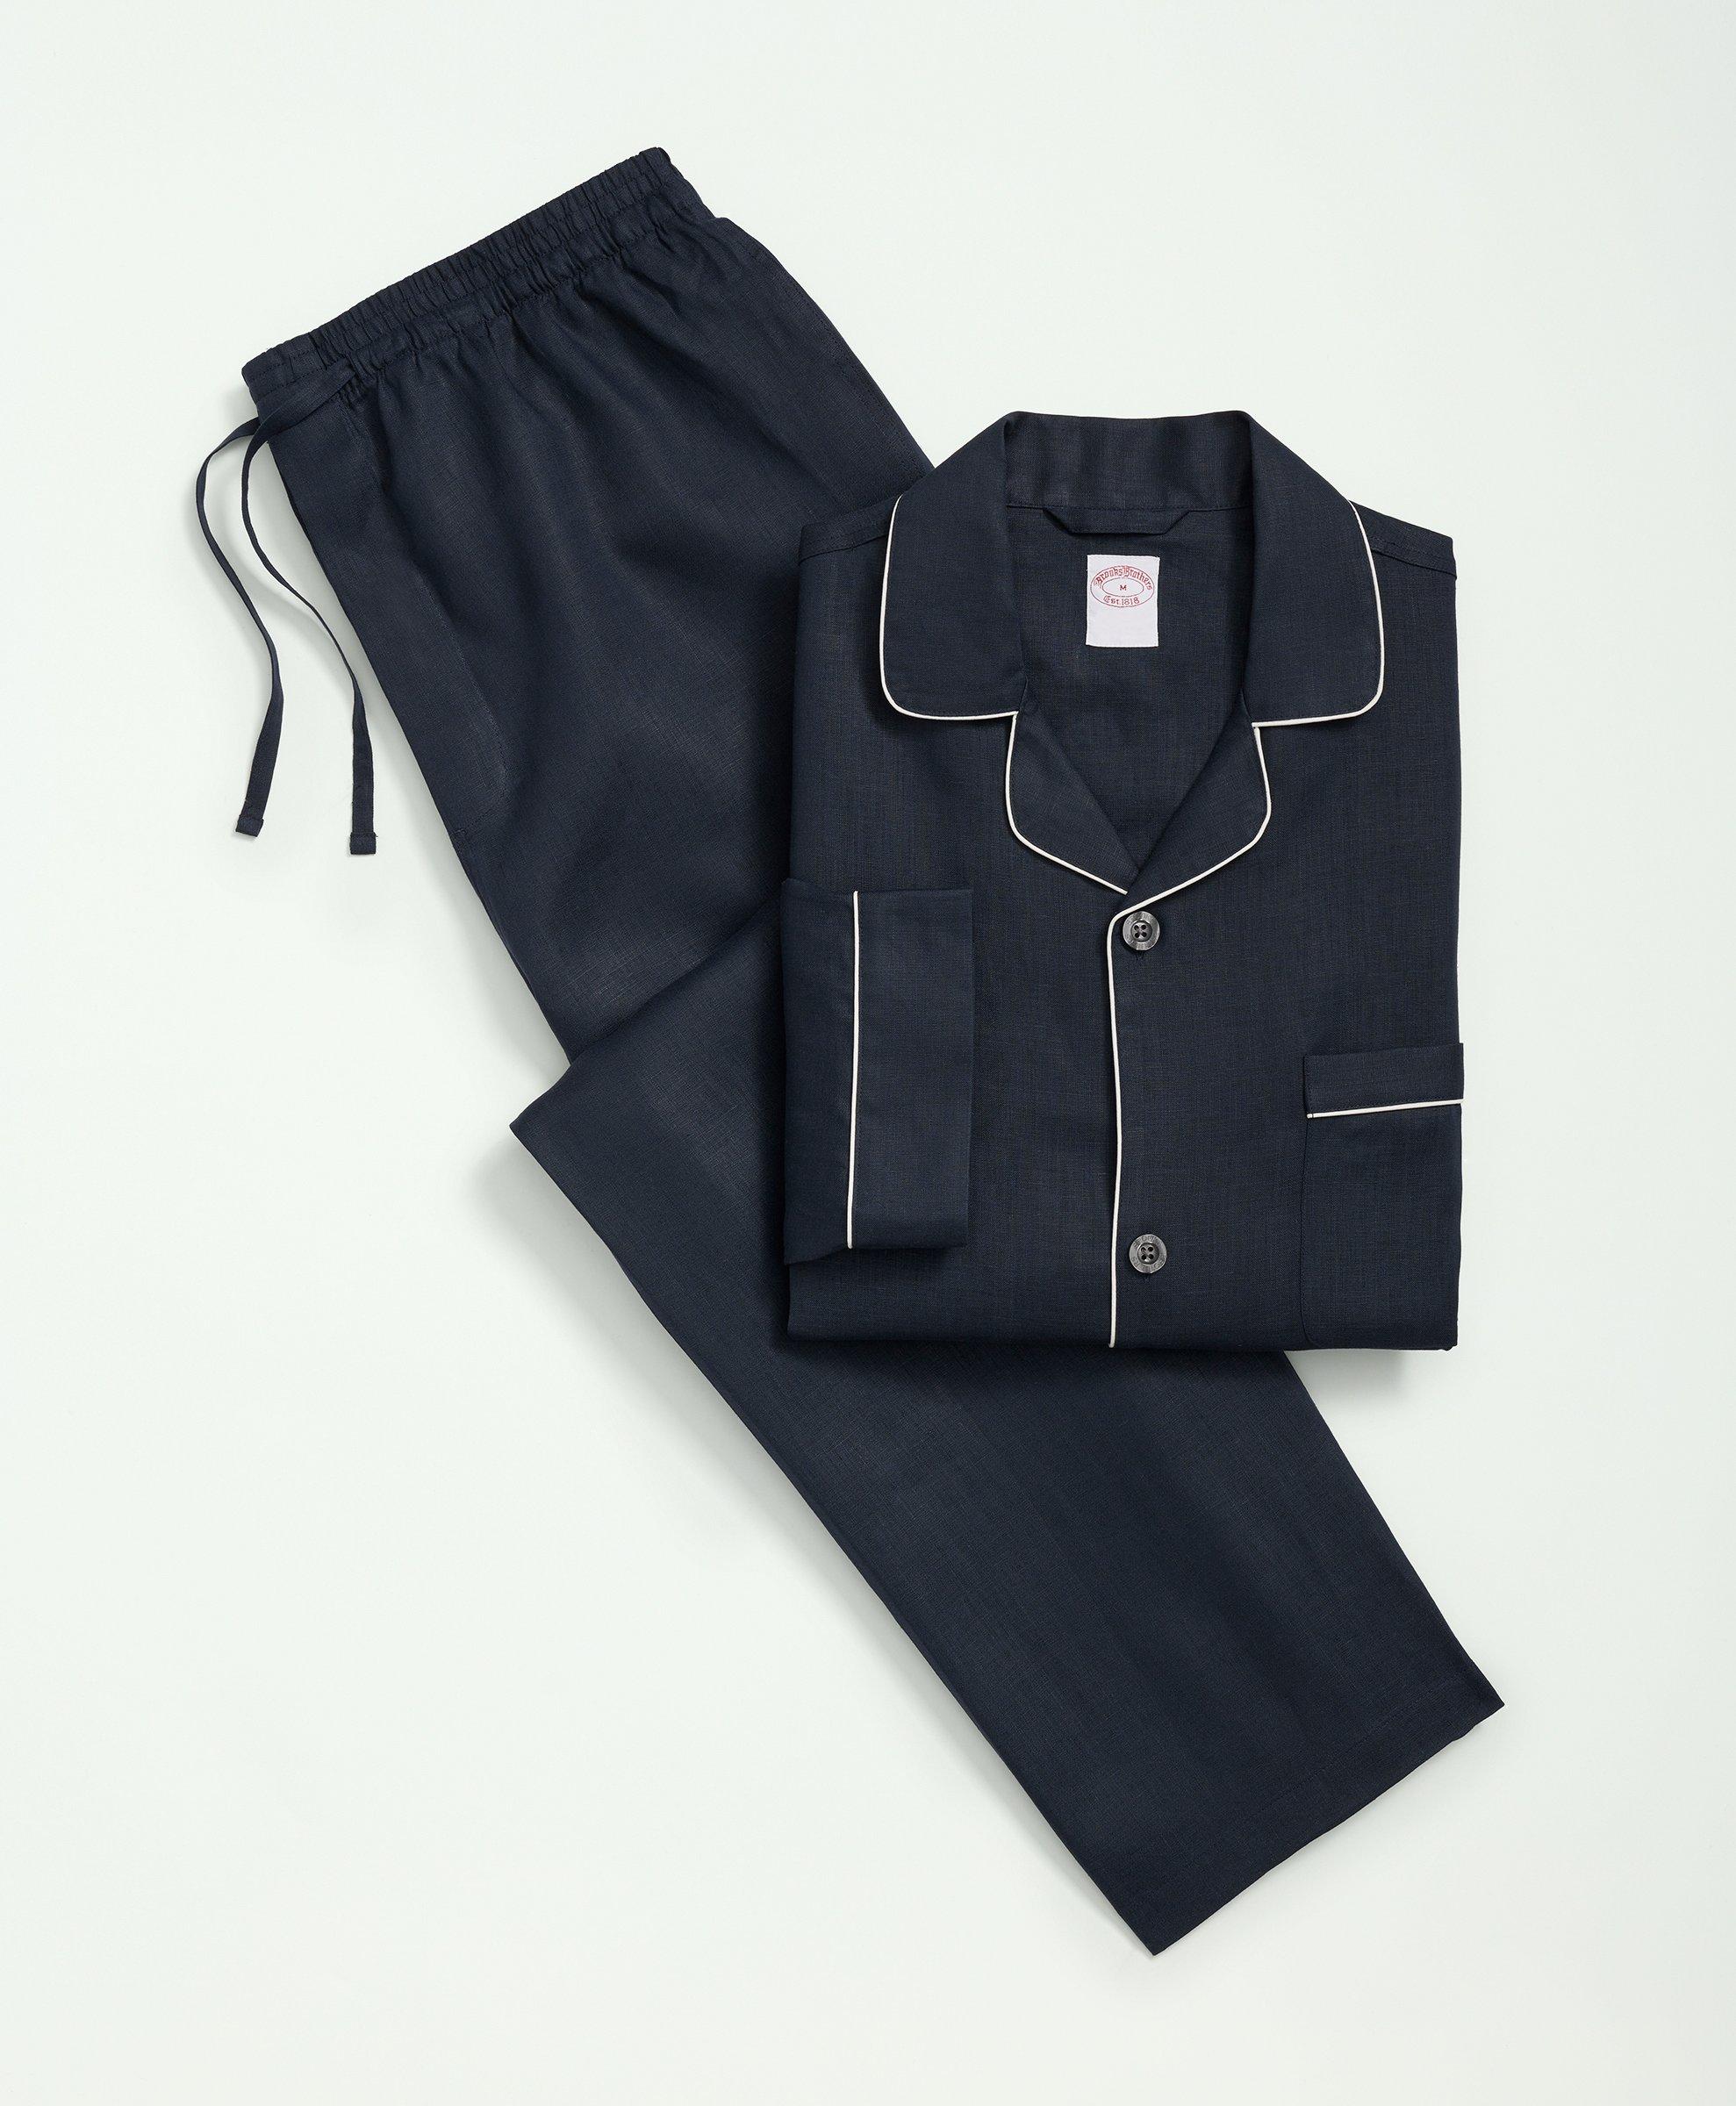 Black Lounge Pant  Buy Pajama Sets for women at BARA Sportswear